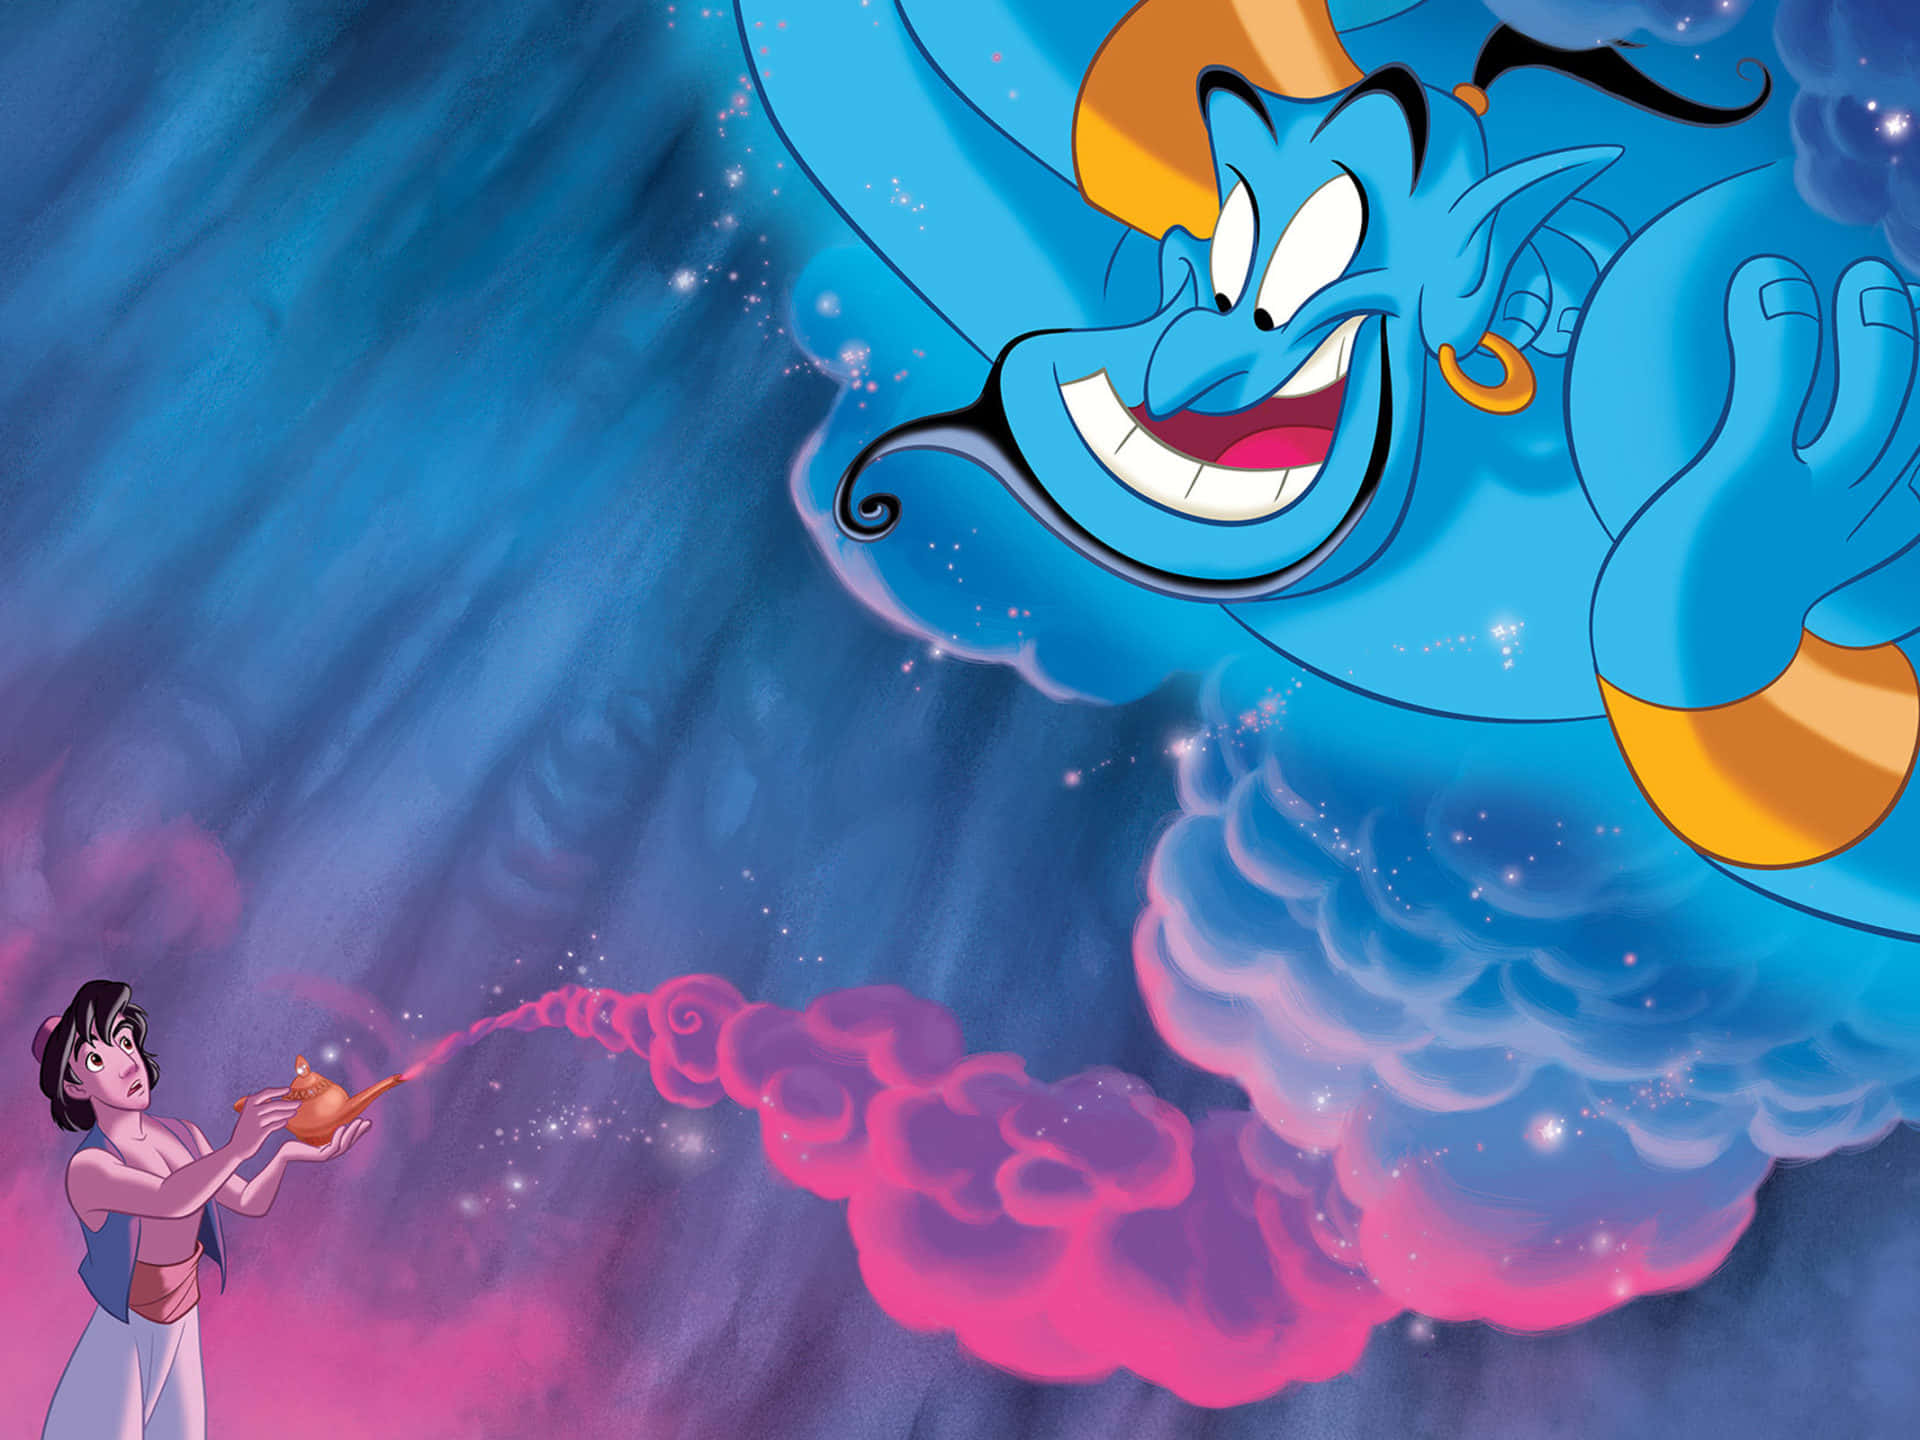 Machensie Sich Auf Eine Magische Reise Mit Aladdin!